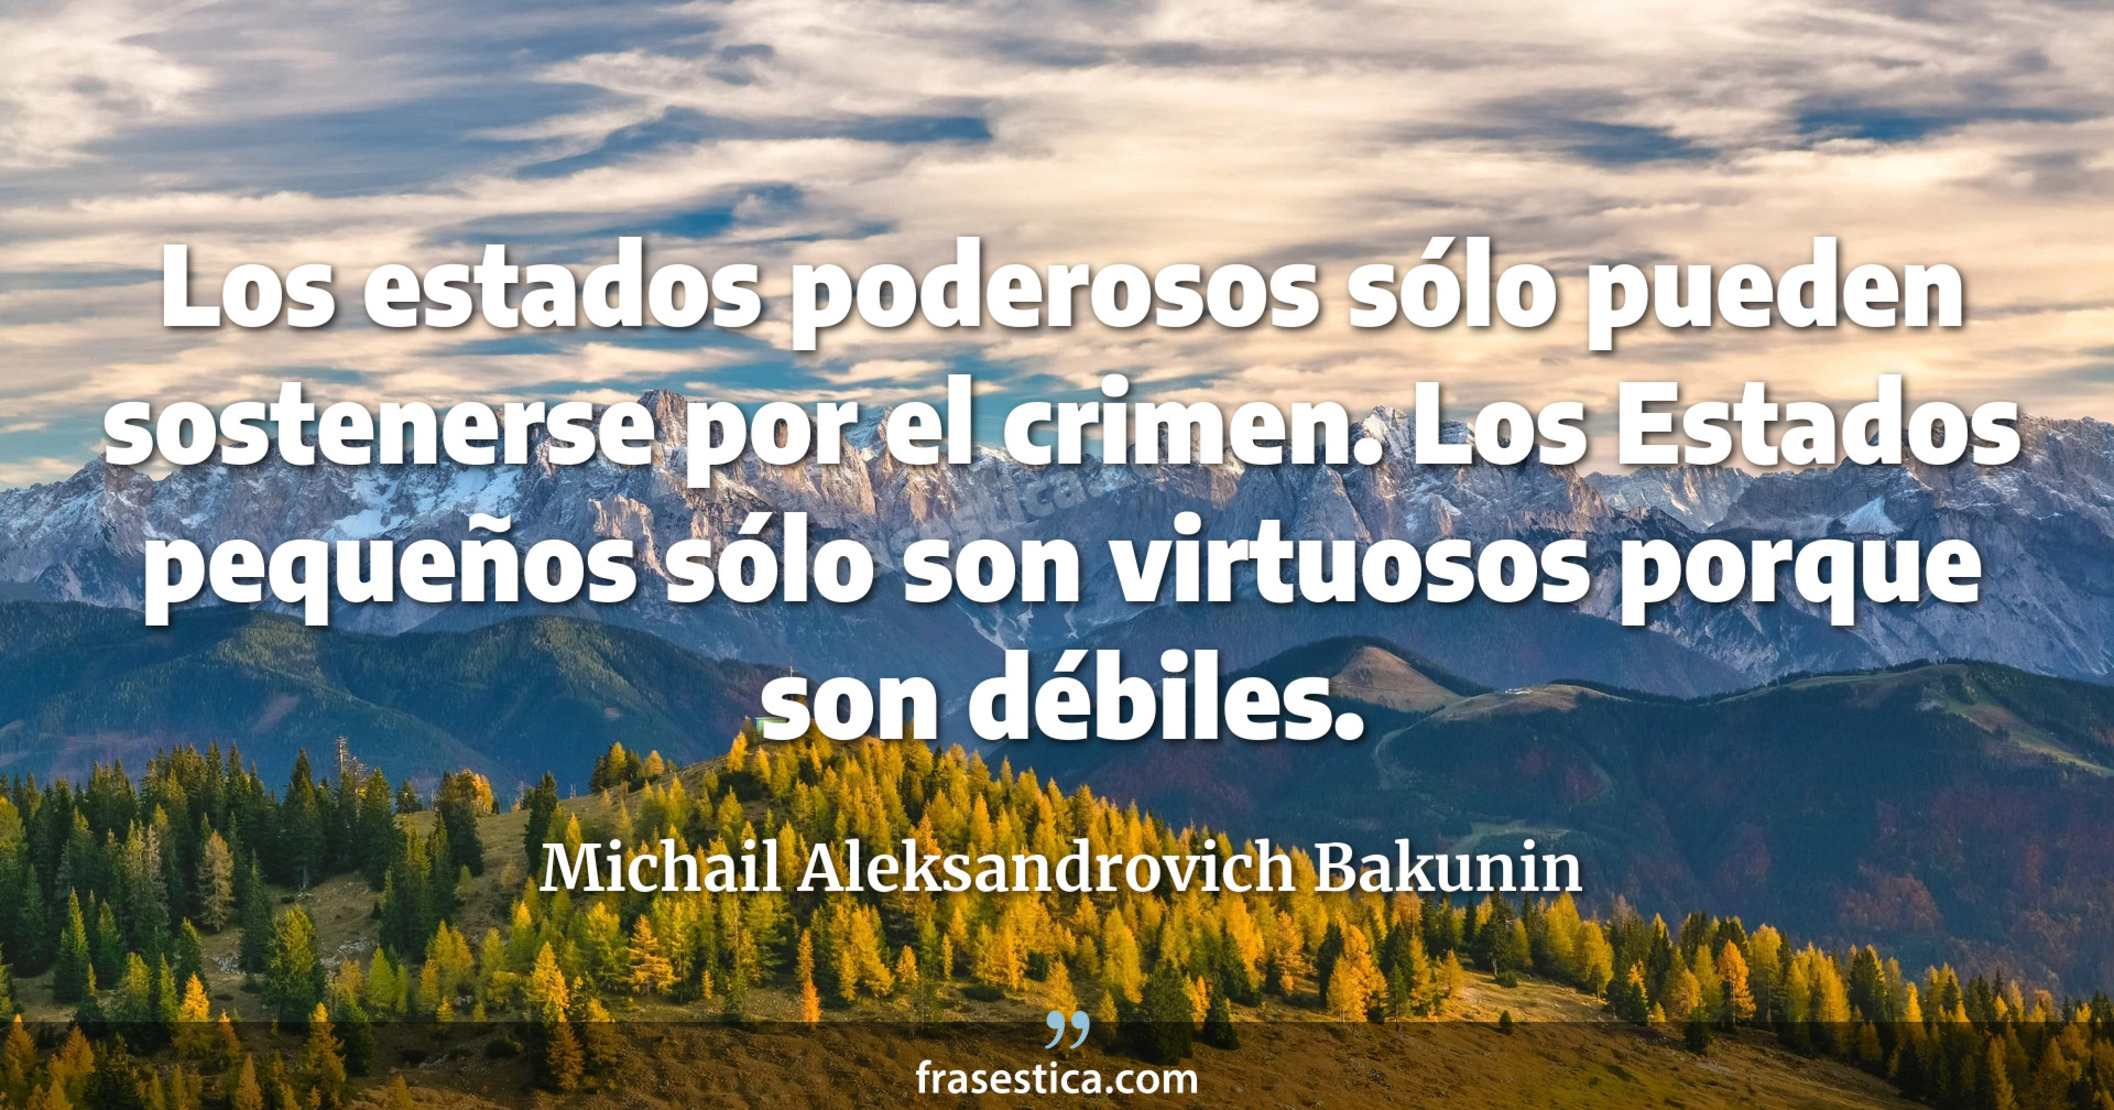 Los estados poderosos sólo pueden sostenerse por el crimen. Los Estados pequeños sólo son virtuosos porque son débiles. - Michail Aleksandrovich Bakunin